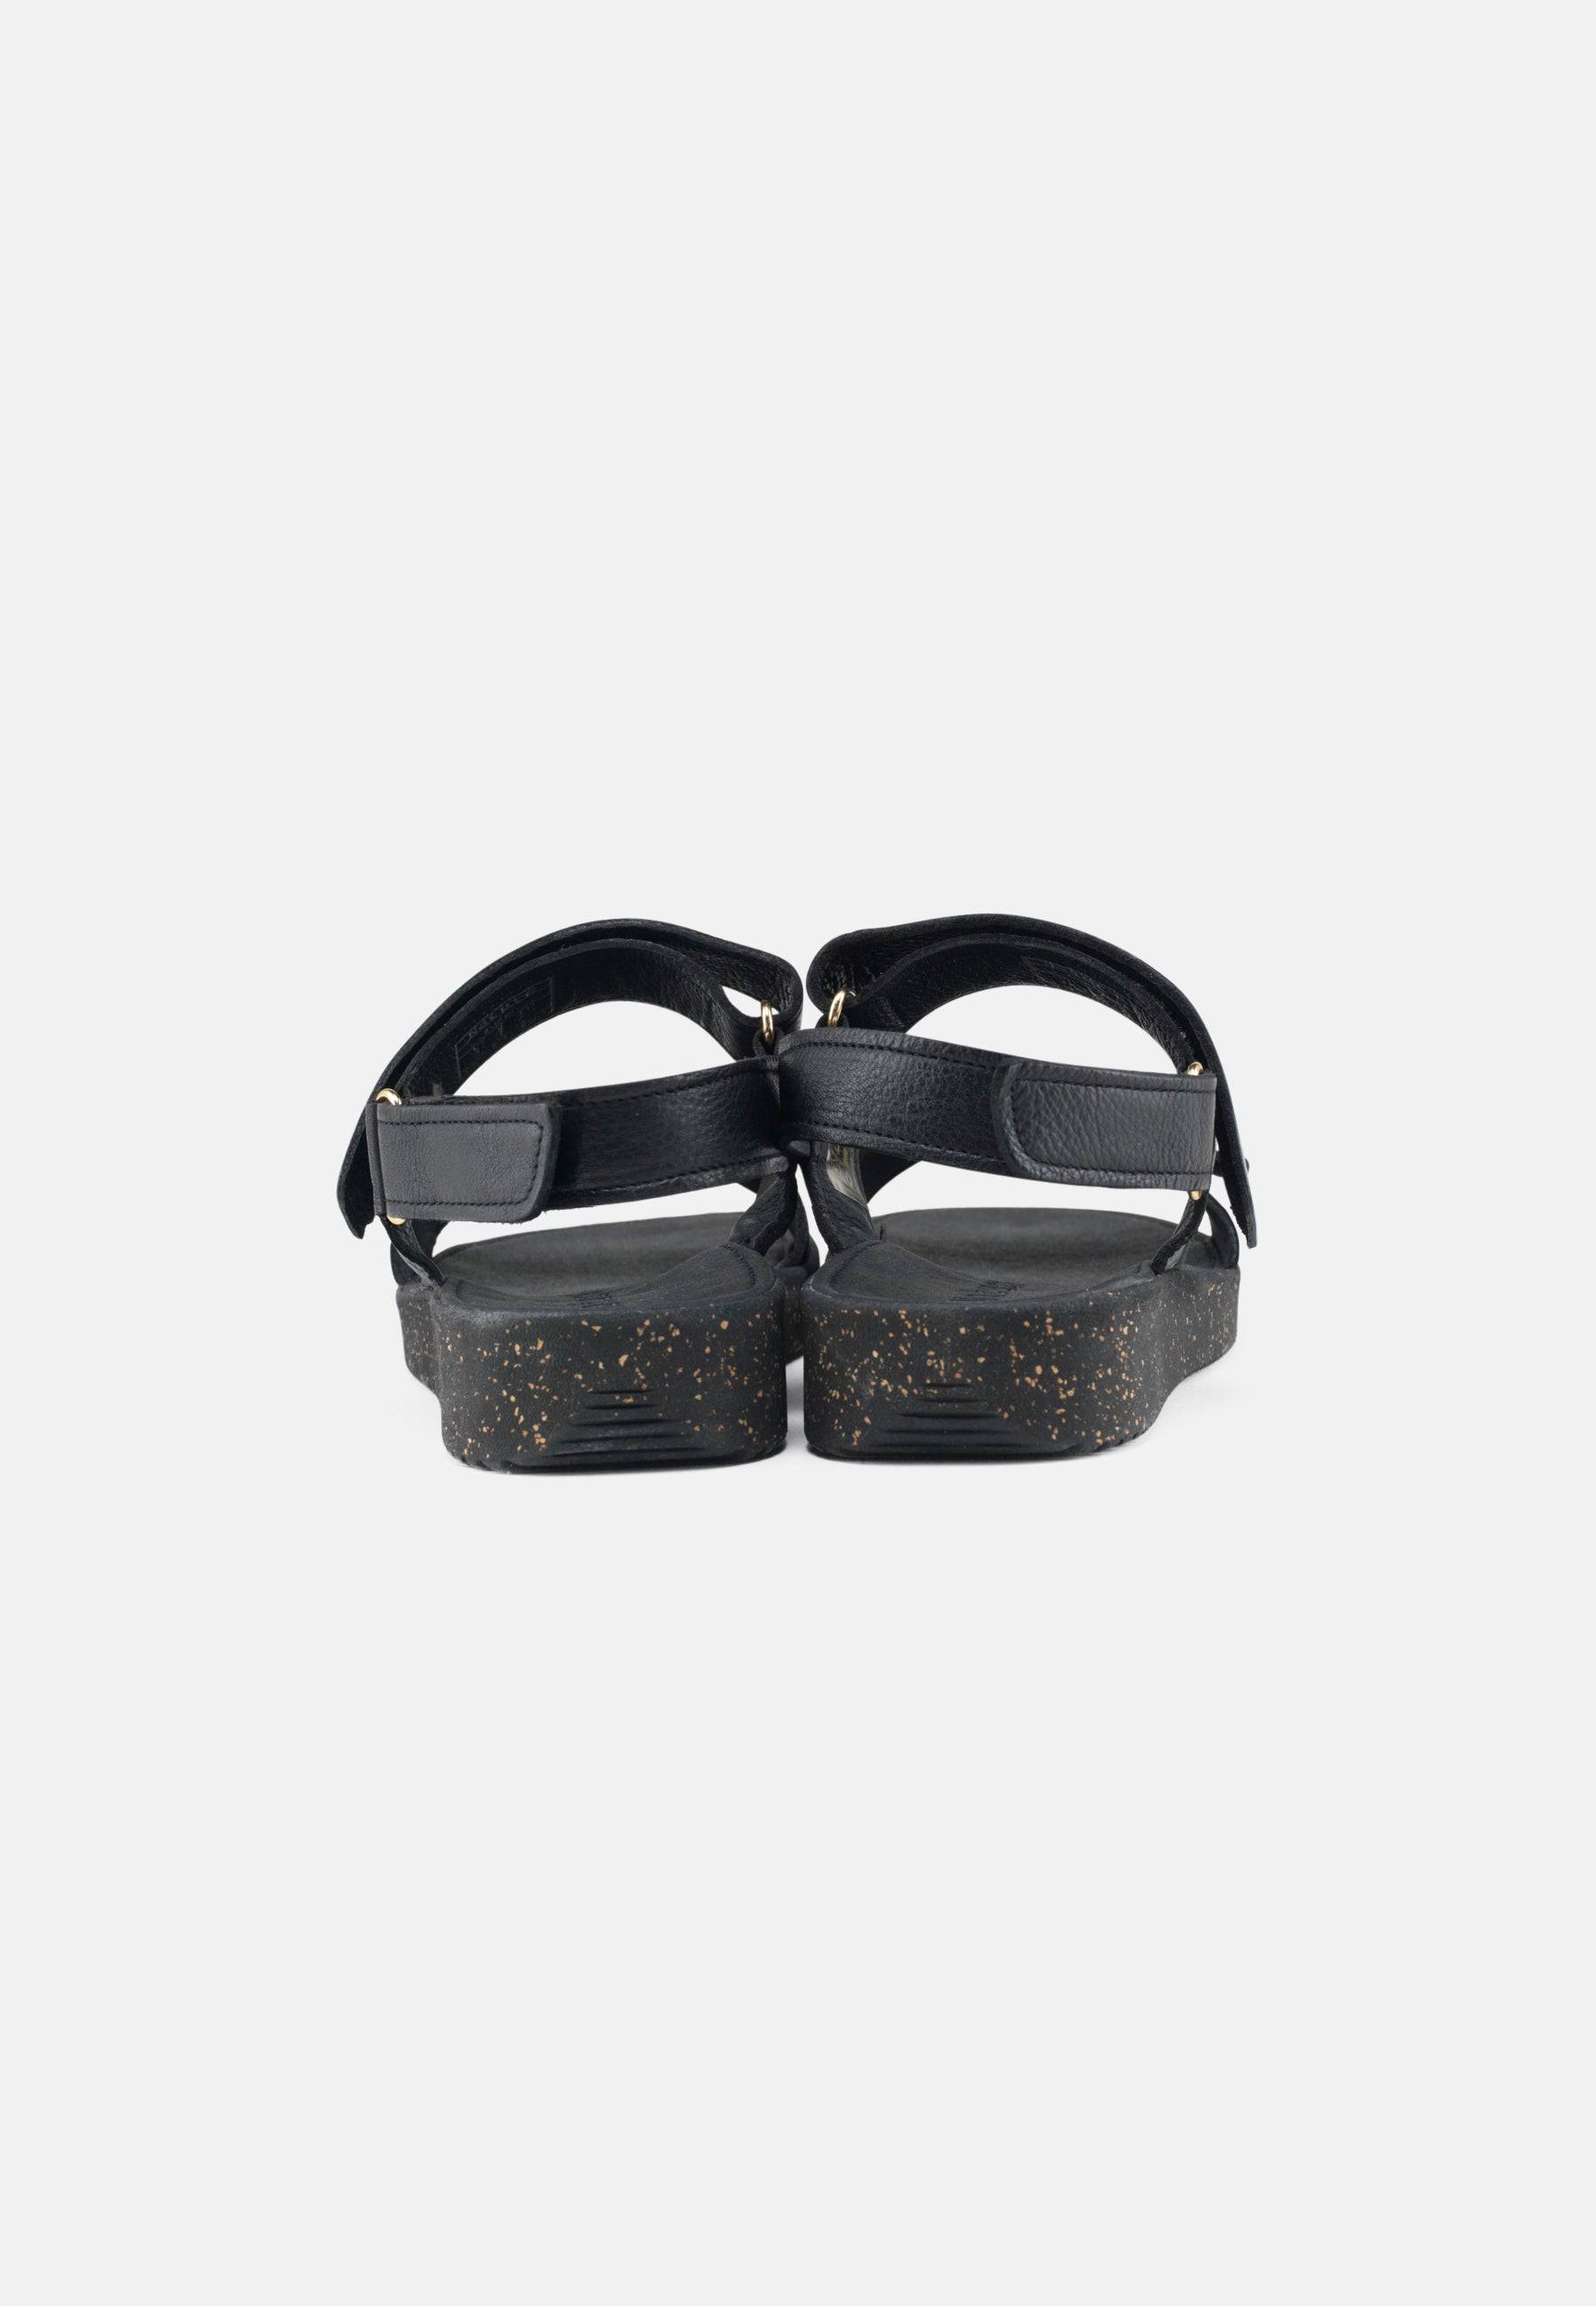 Karen Sandal Eco Leather - Black - Nature Footwear